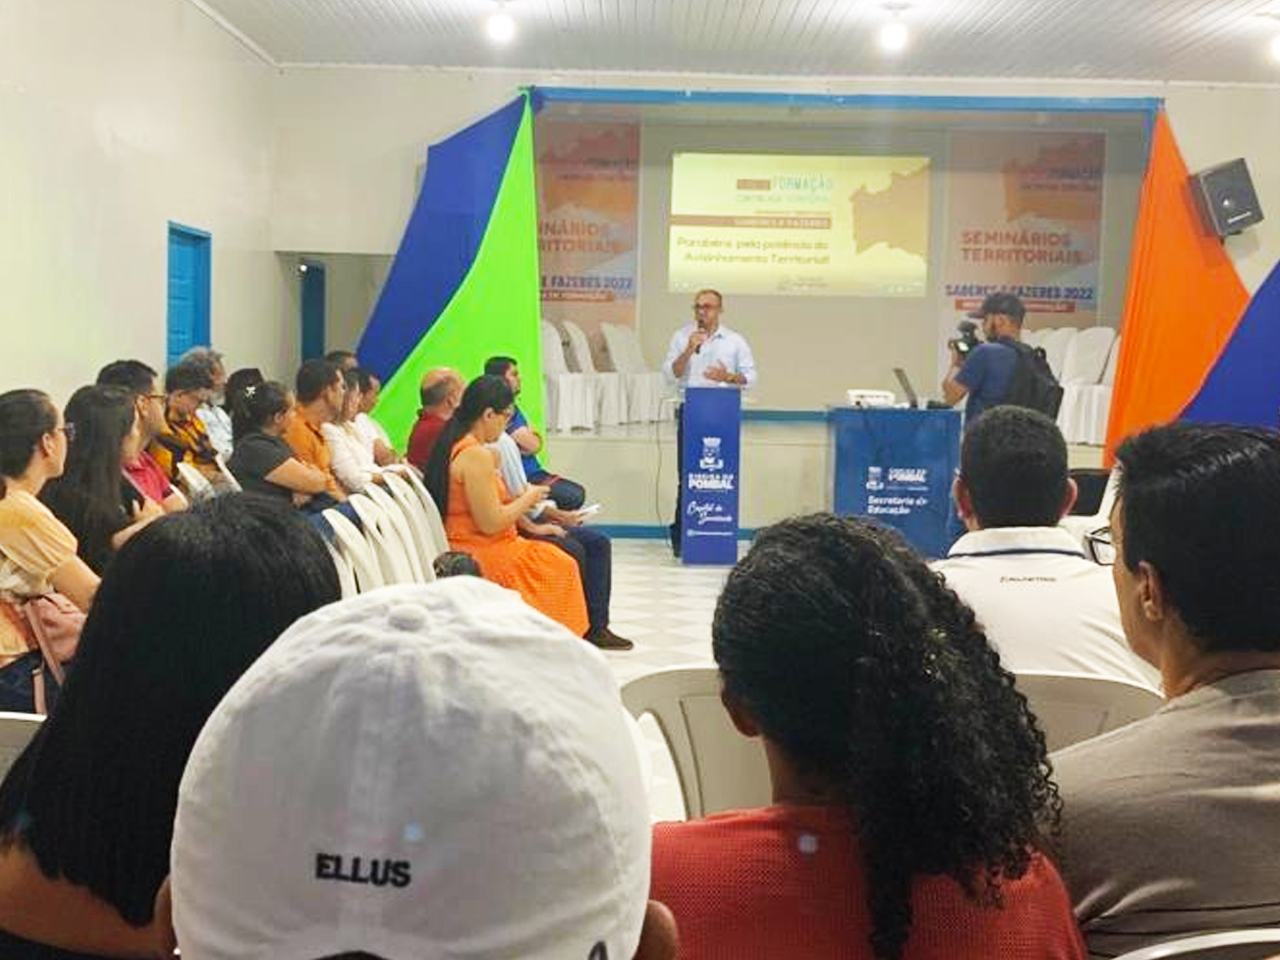 Secretaria de Educação participa de Seminário Territorial “Saberes e Fazeres” em Ribeira do Pombal